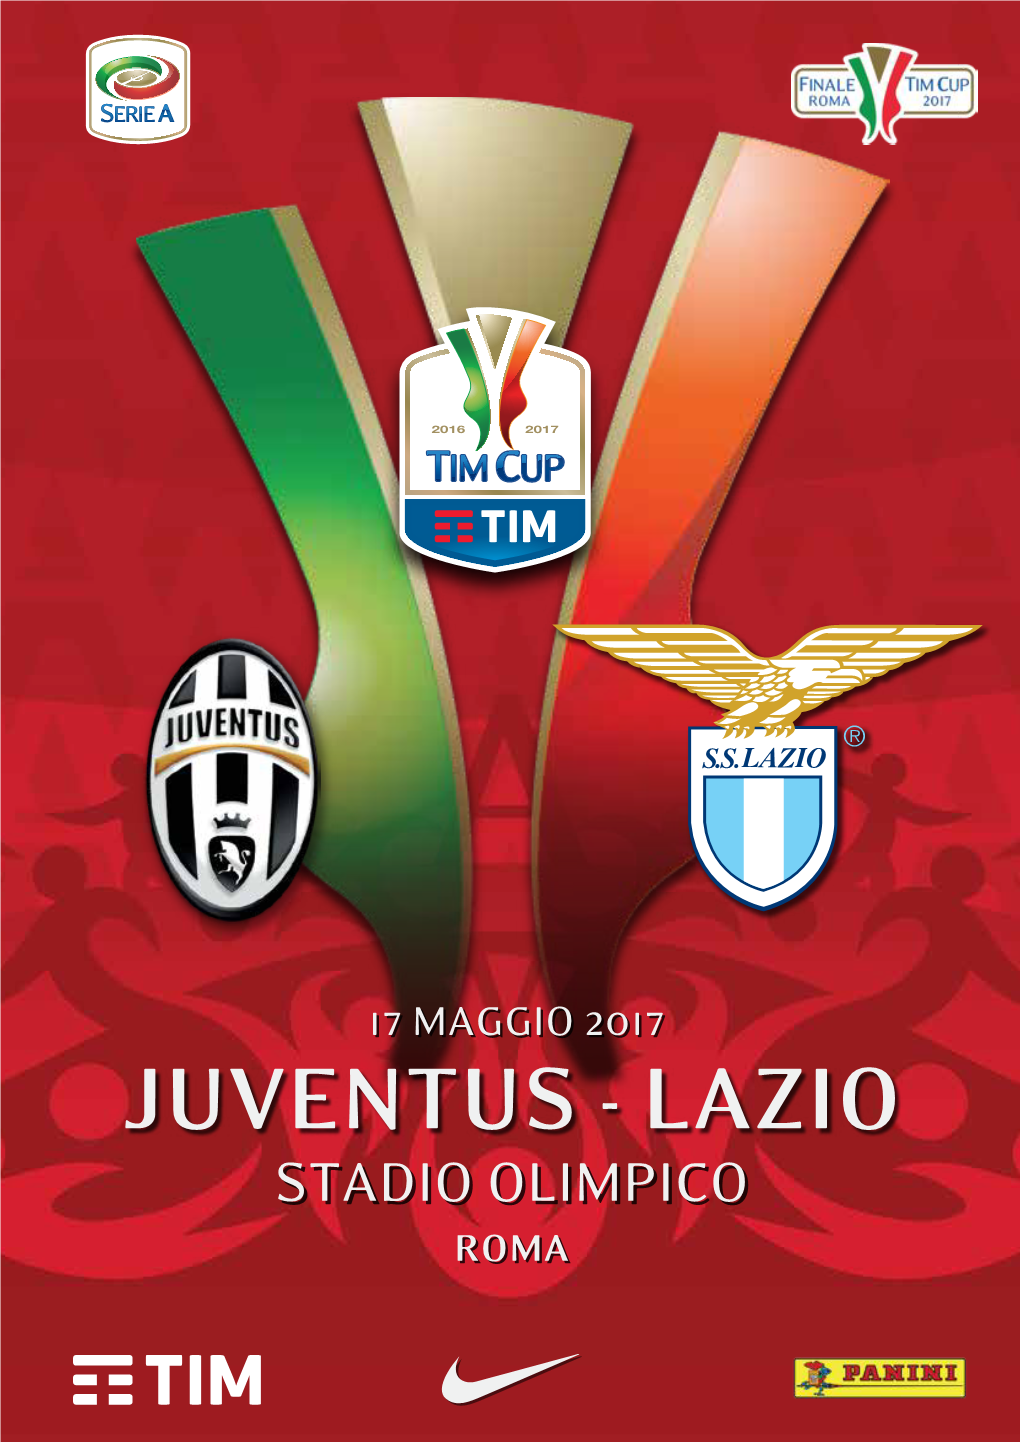 Juventus - Lazio Stadiostadio Olimpicoolimpico Romaroma Albo D’Oro